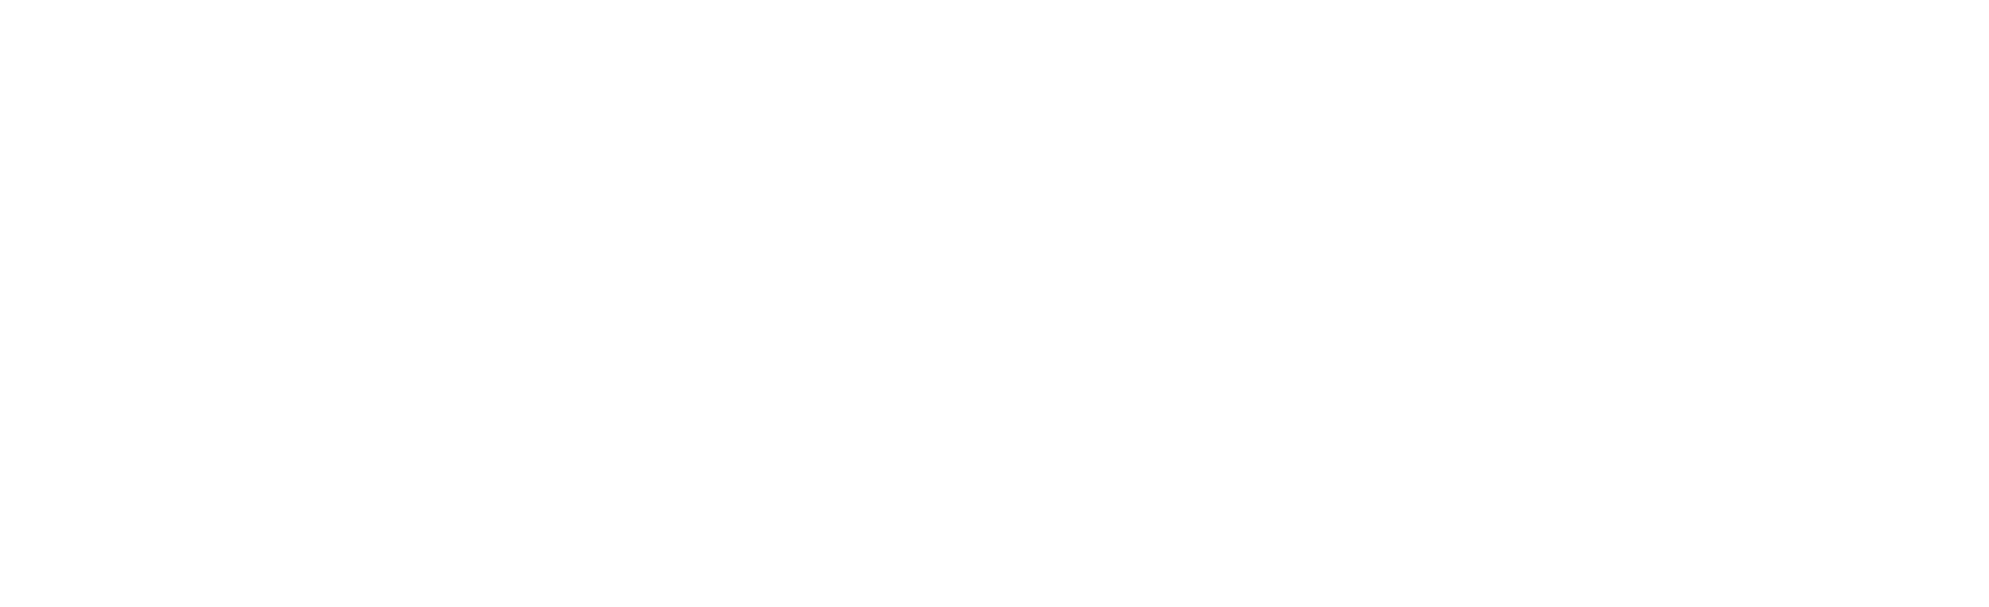 MarcAngelo Group